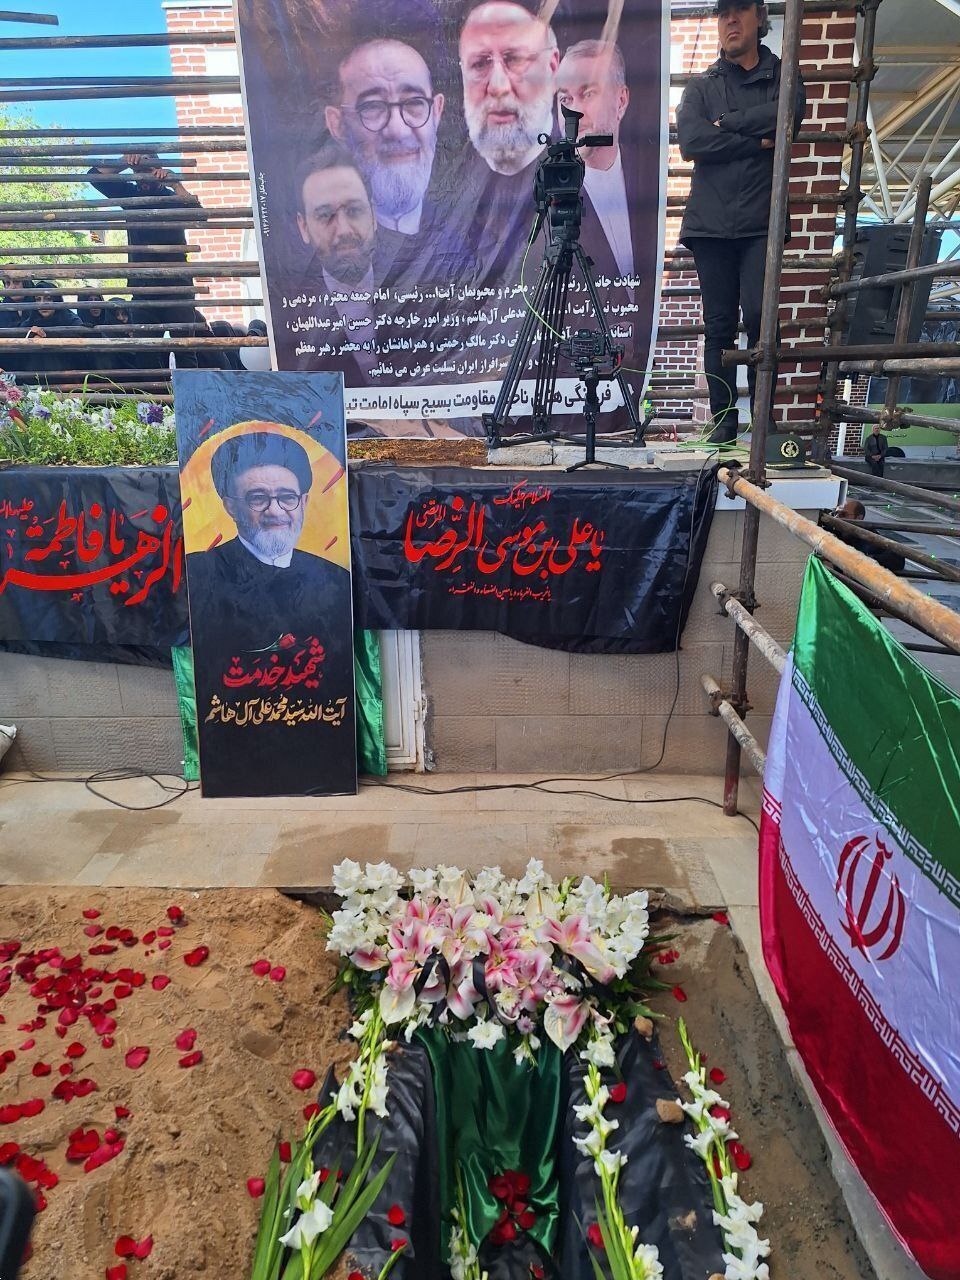 اولین تصویر از مزار شهید آل هاشم پس از دفن 2